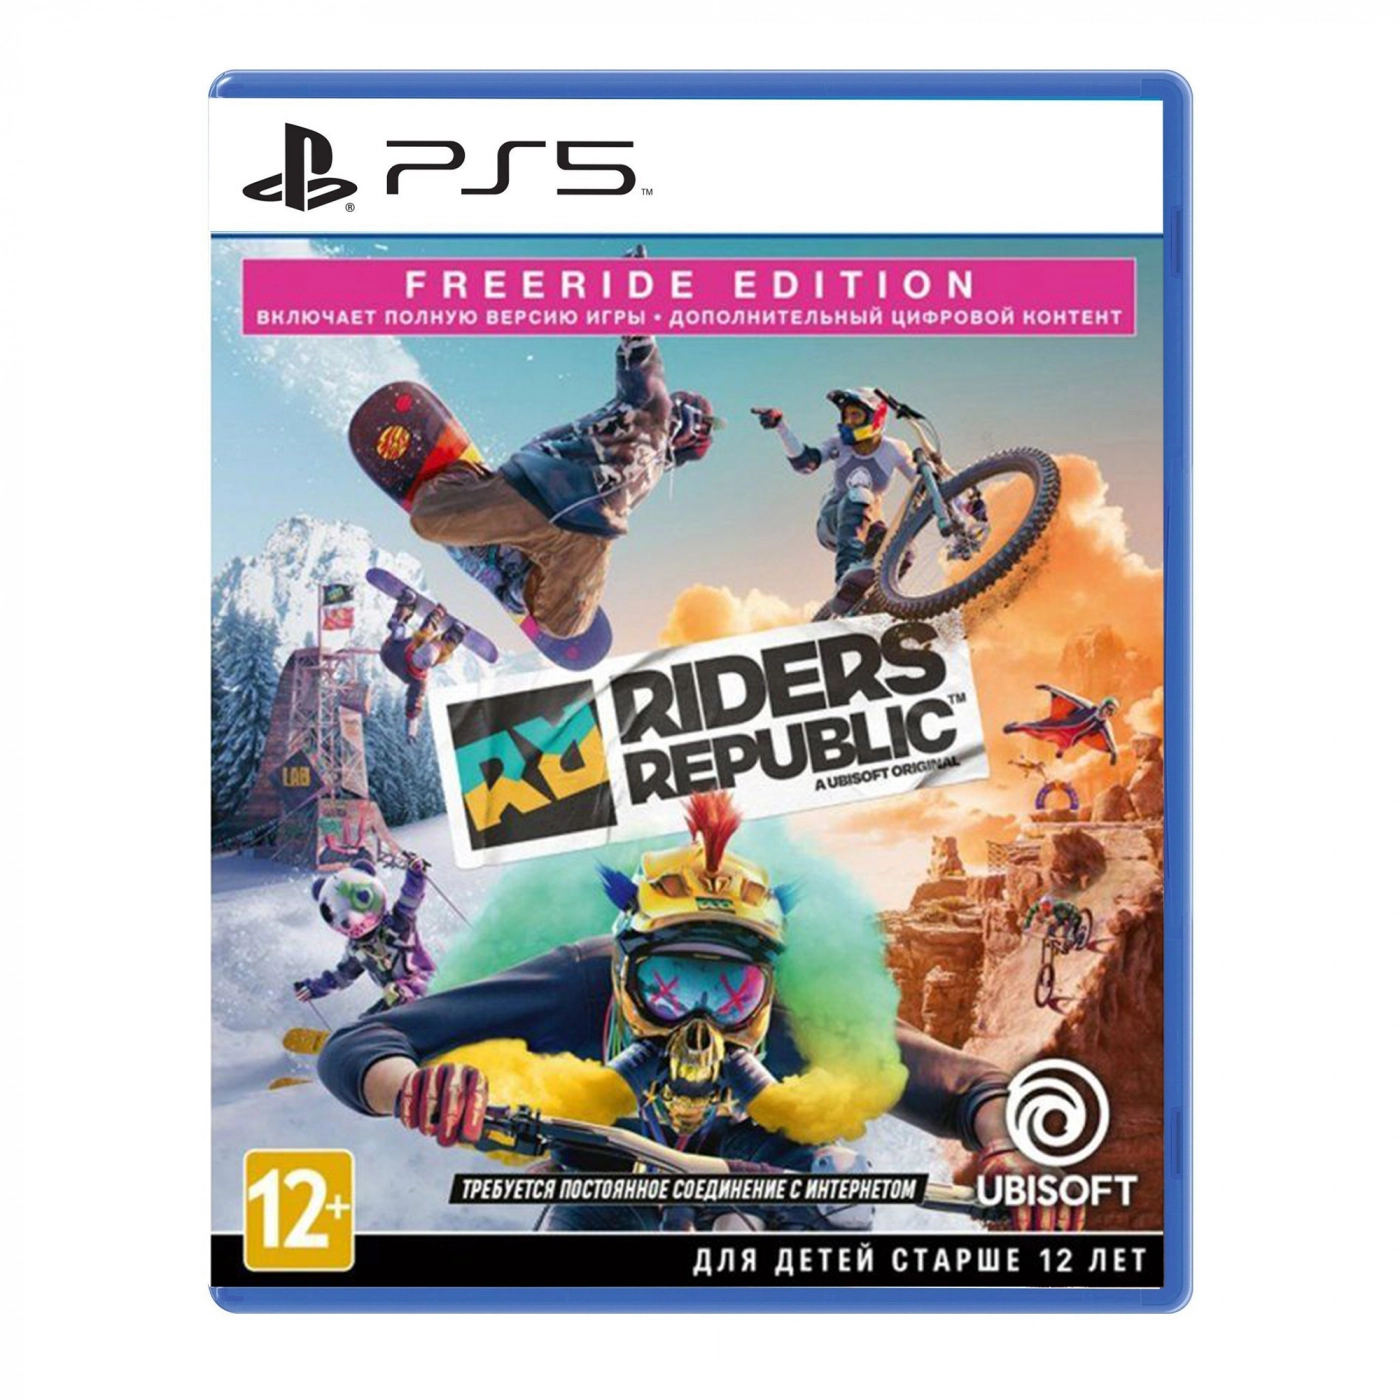 Купить Игра Sony Riders Republic. Freeride Edition [PS5, Russian version] - фото 1